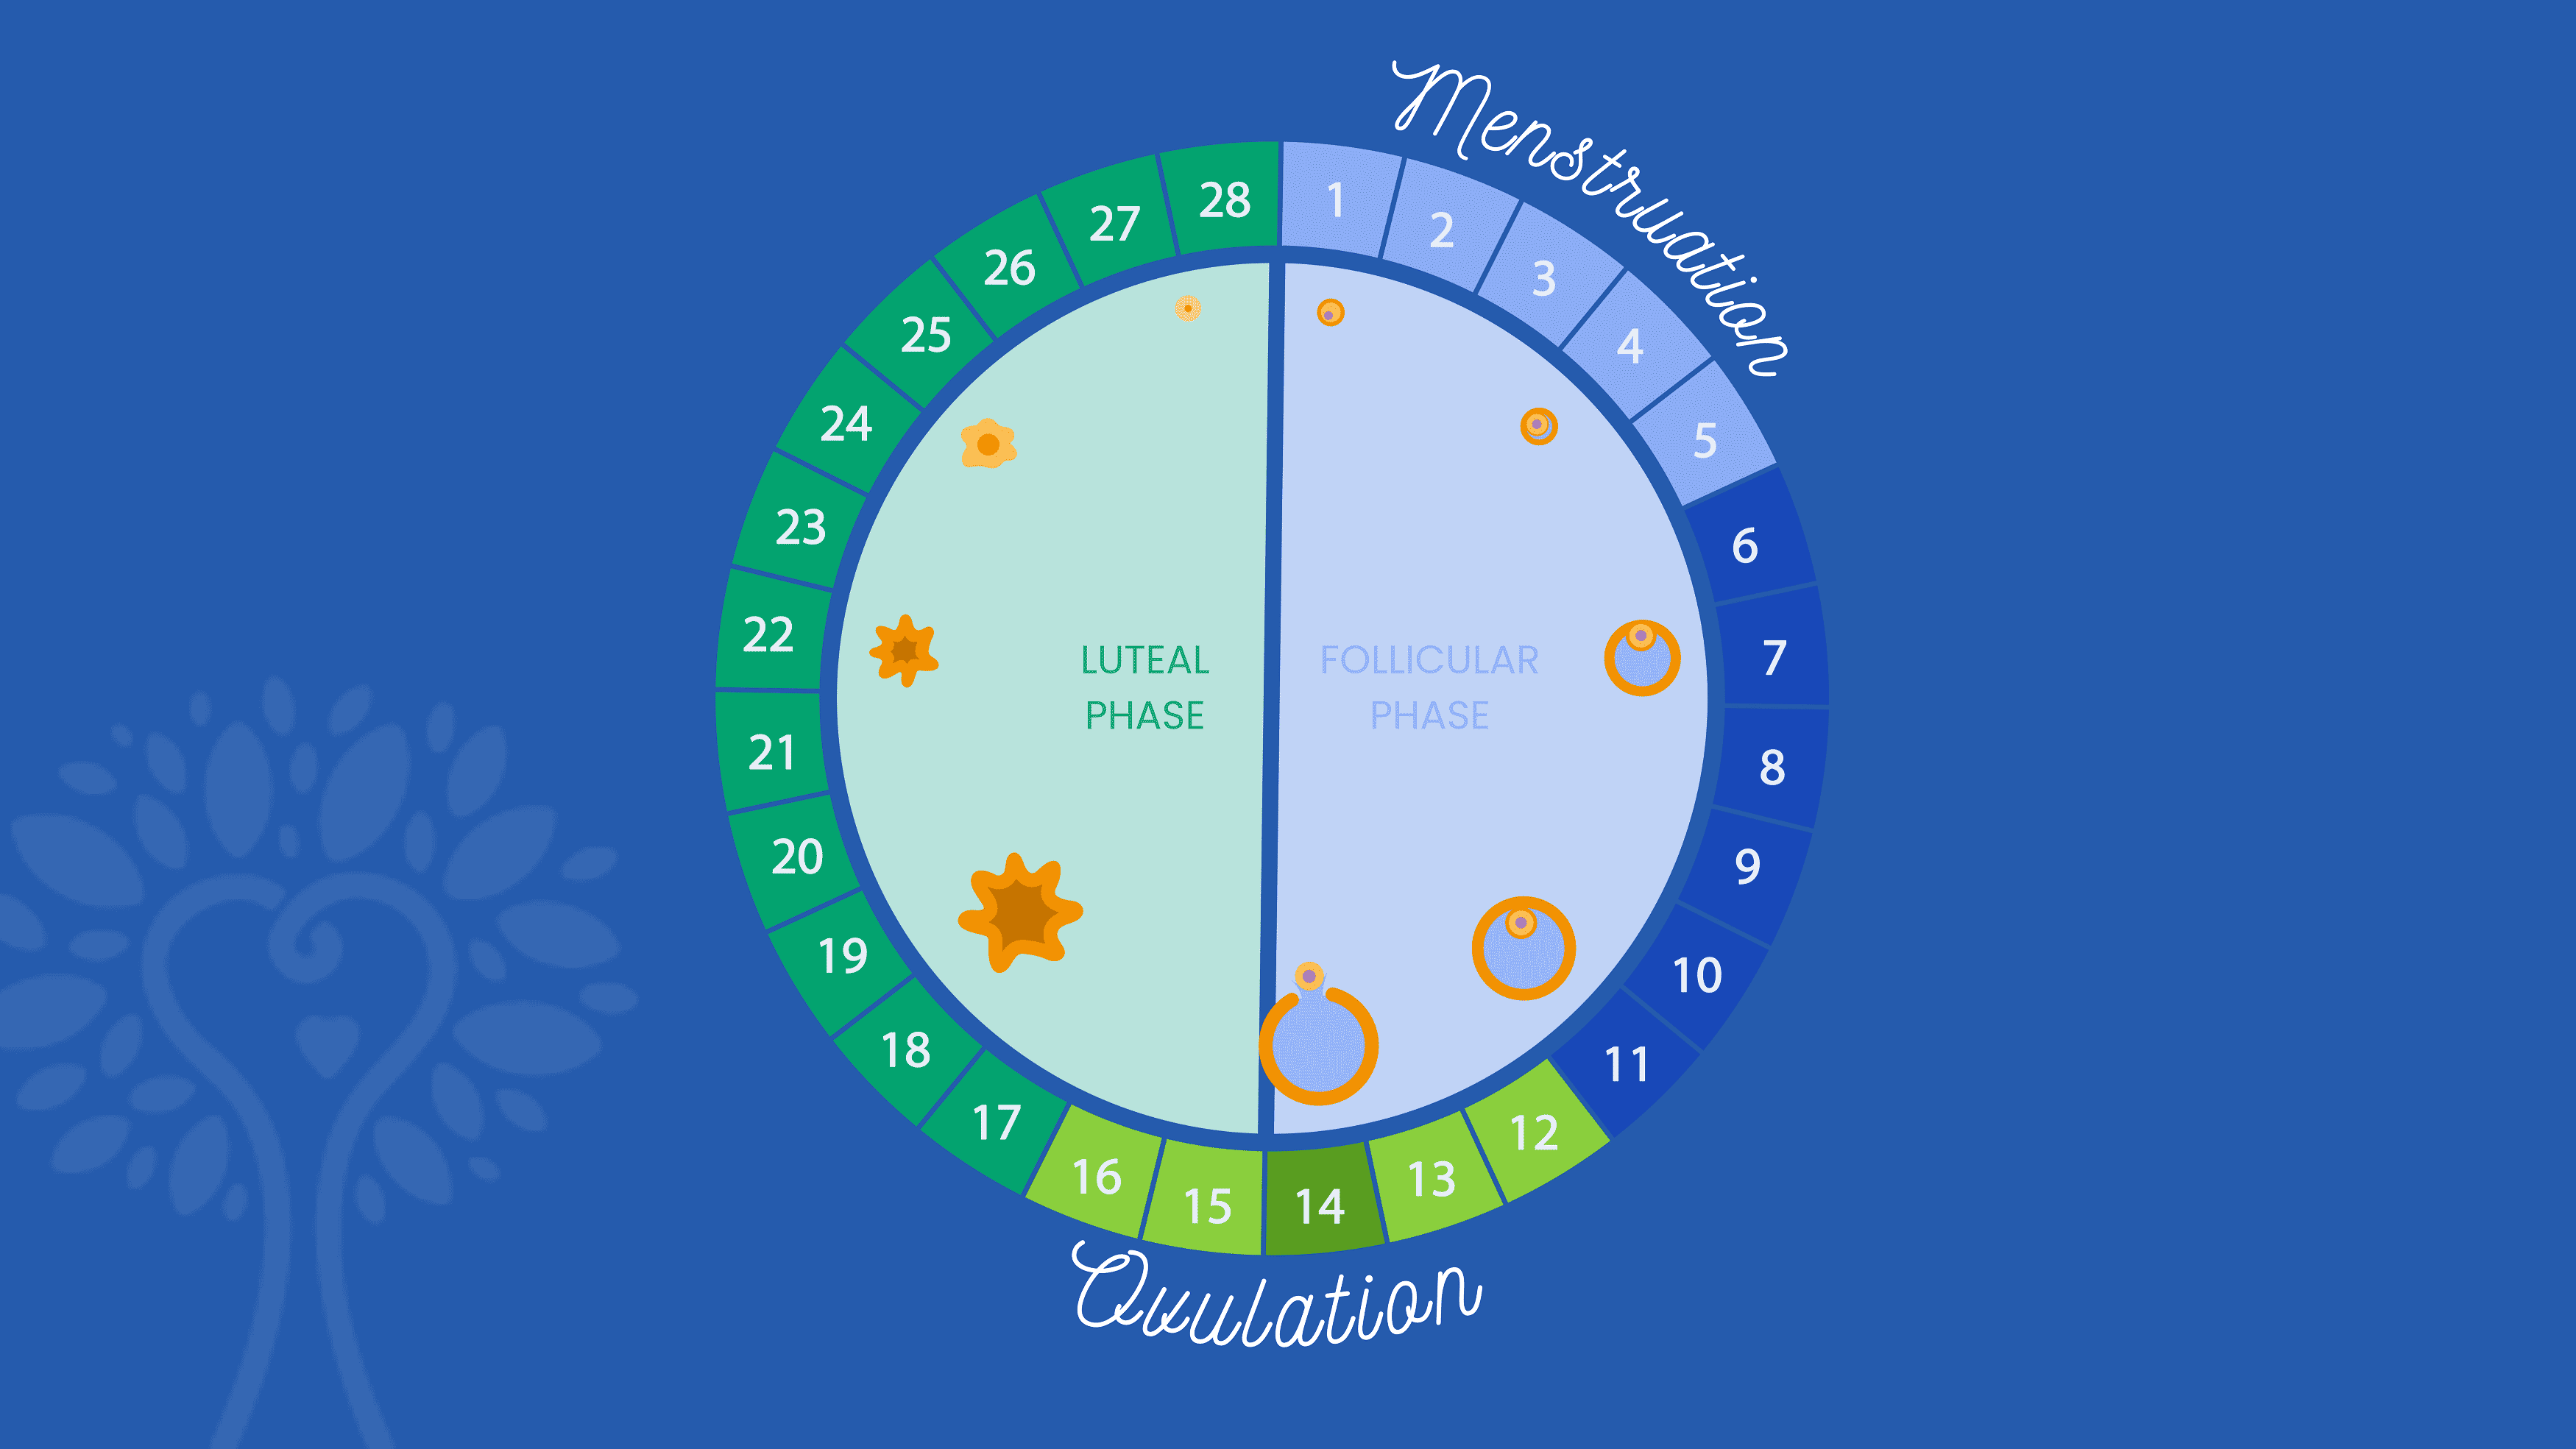 Fondo azul oscuro con un calendario circular de FIV que muestra los 28 días de un ciclo menstrual con la palabra "Menstruación" que abarca los días 1 al 5 y la palabra "Ovulación" que abarca los días 12 al 16. Los números están coloreados en diferentes tonos de azul y verde según su fase.